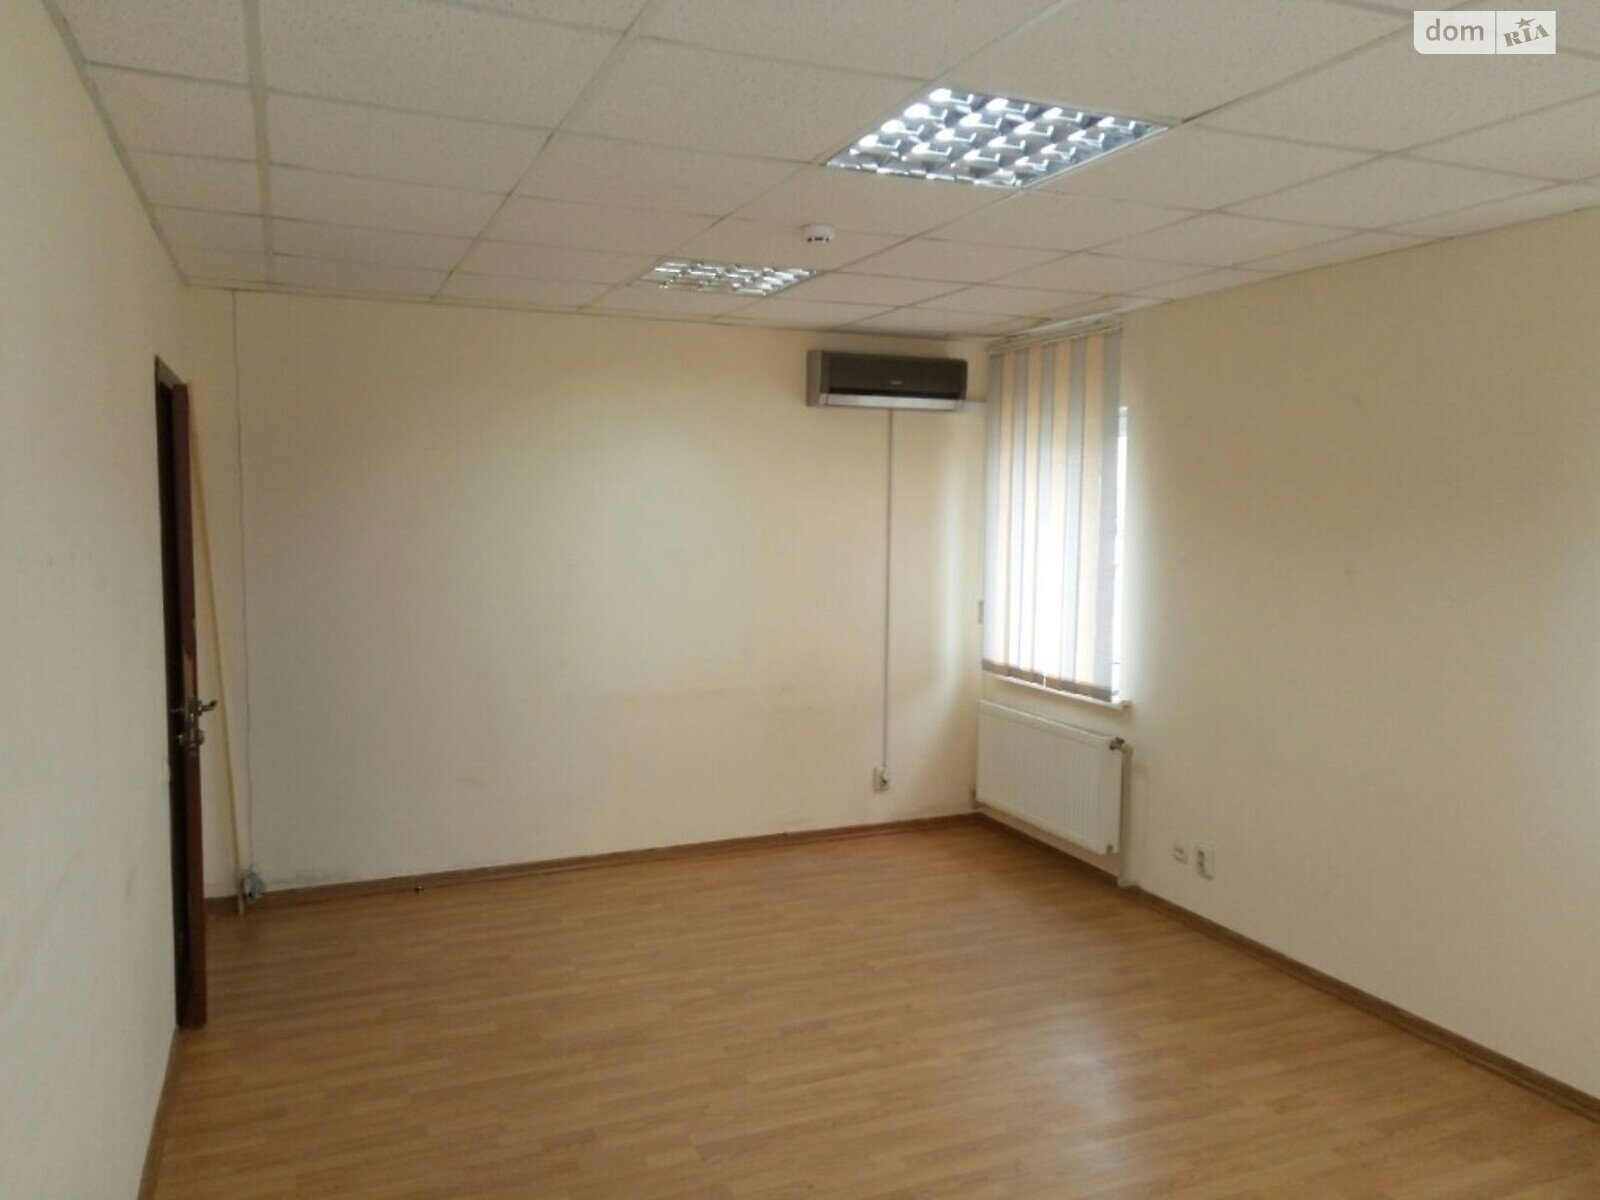 Аренда офисного помещения в Хмельницком, Проспект Миру 42/1, помещений - 1, этаж - 2 фото 1